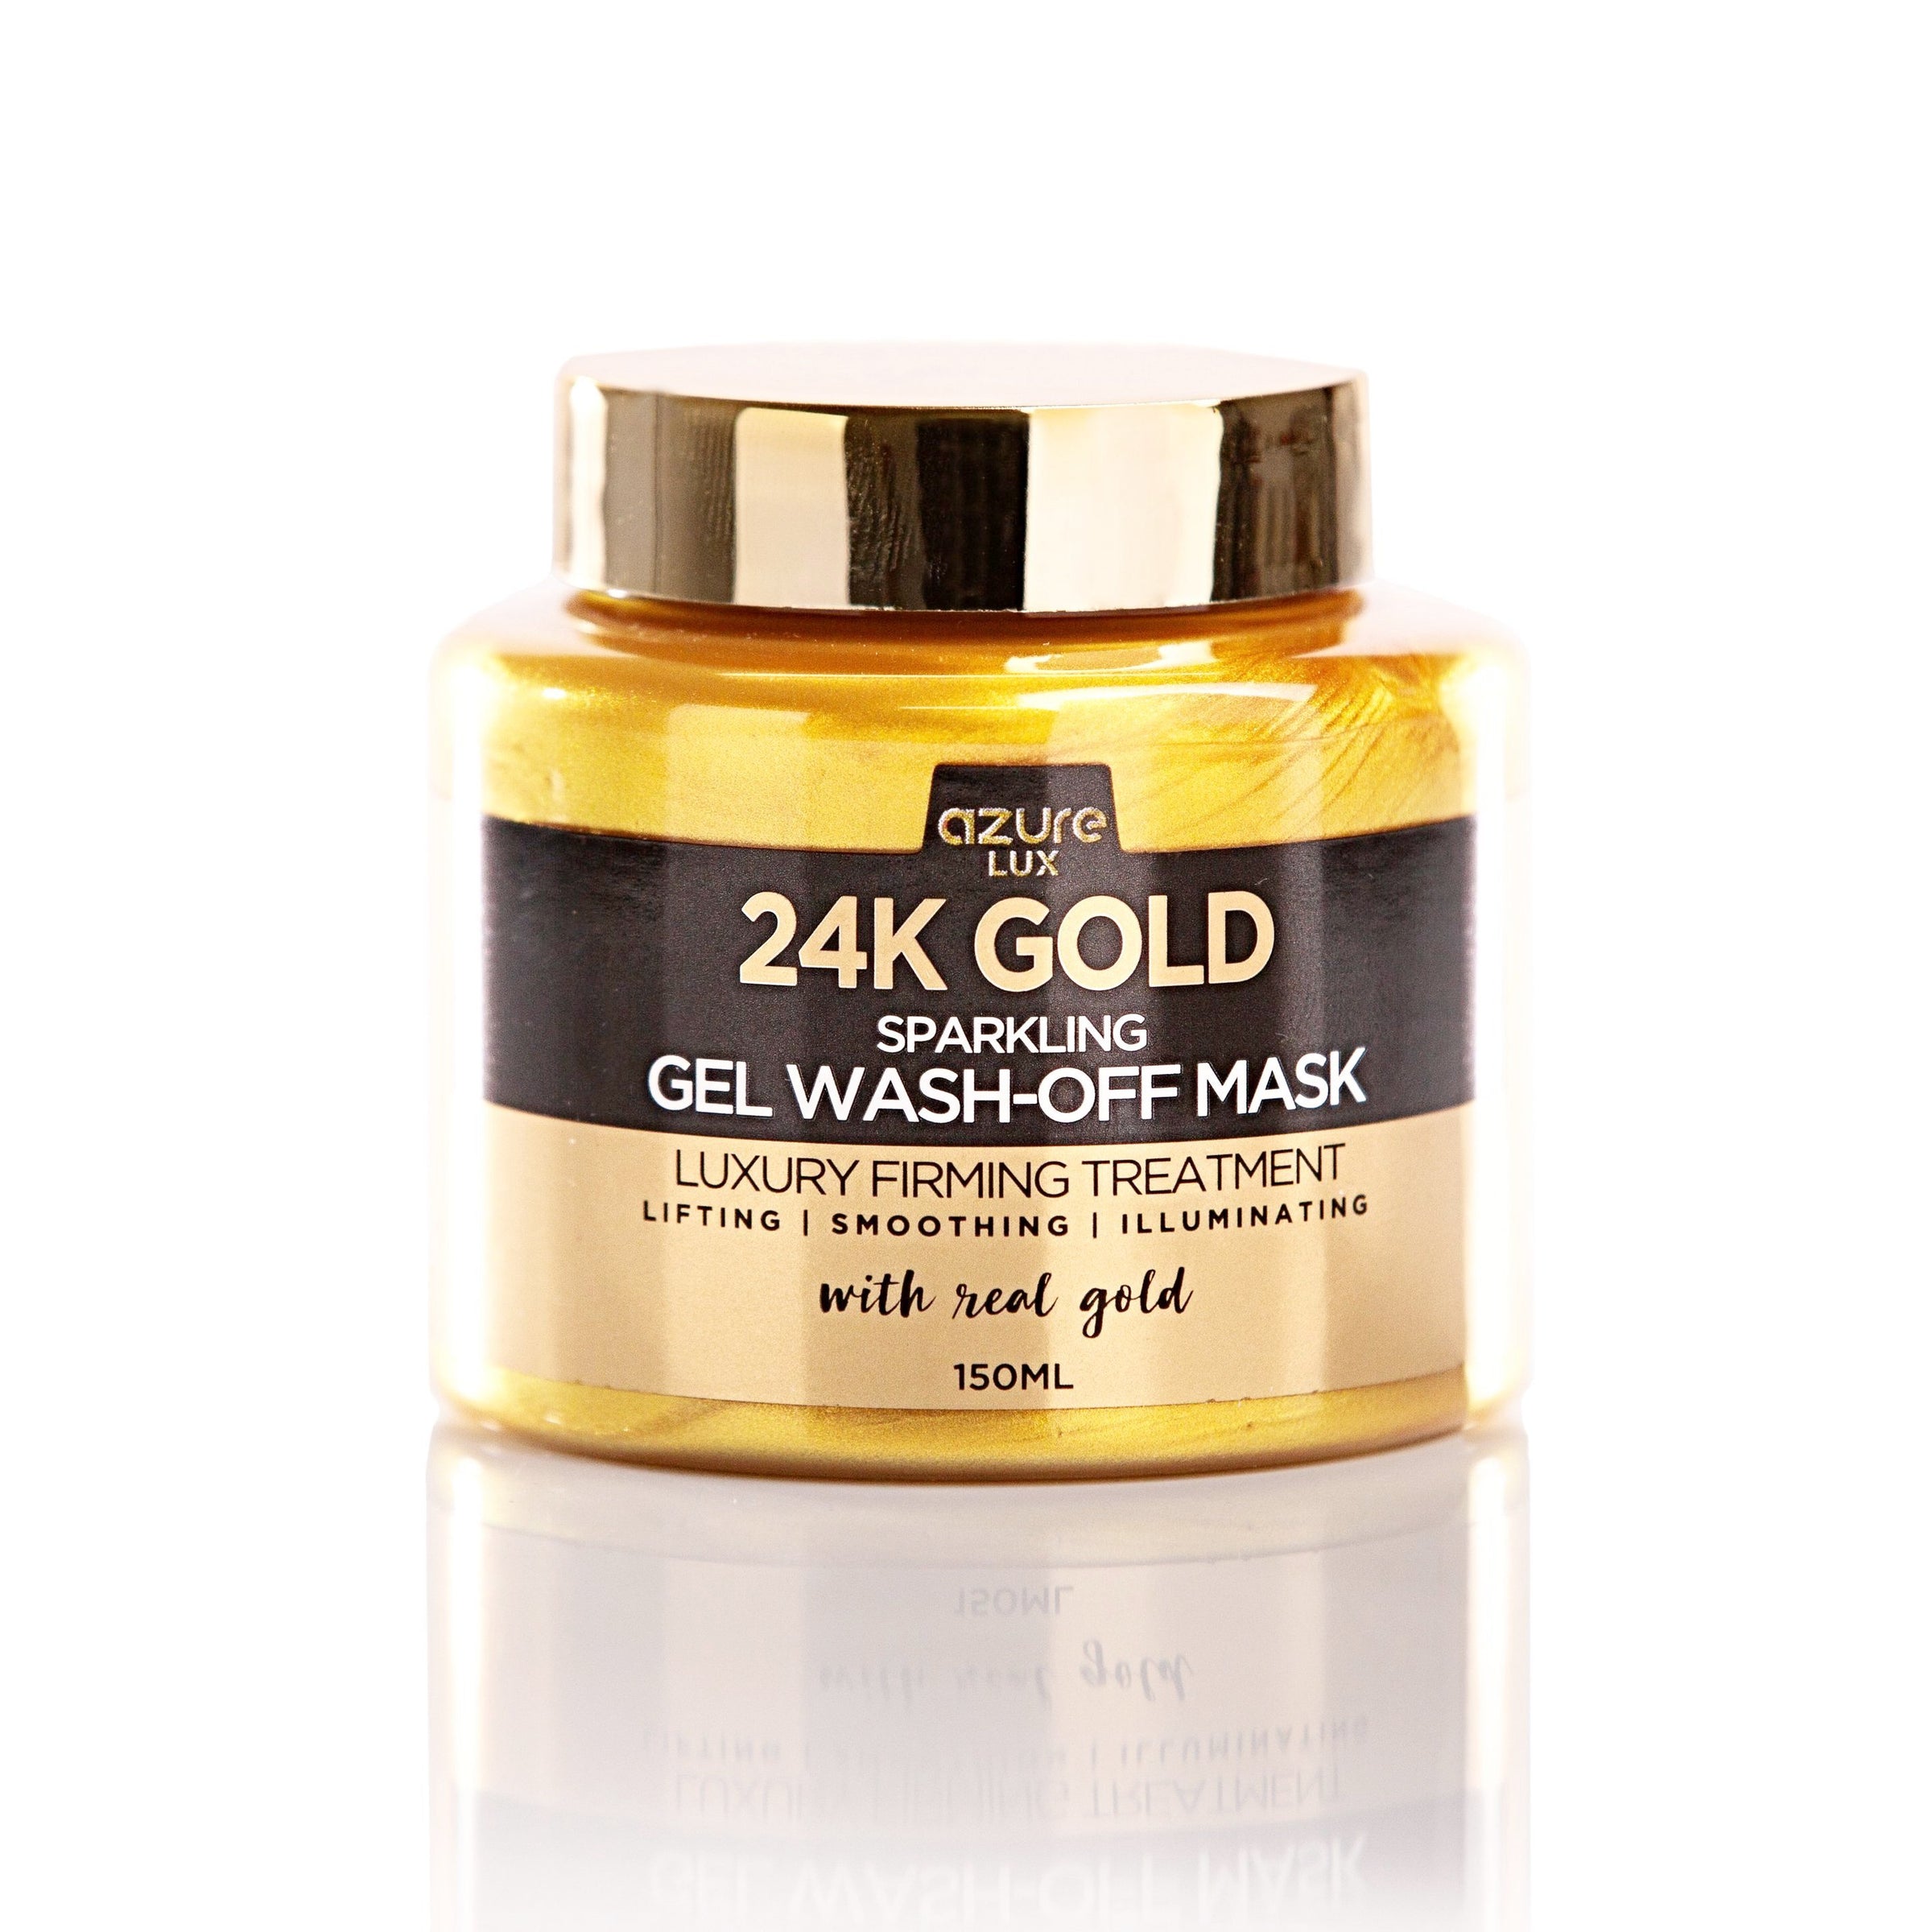 24K gold sparkling peel off mask